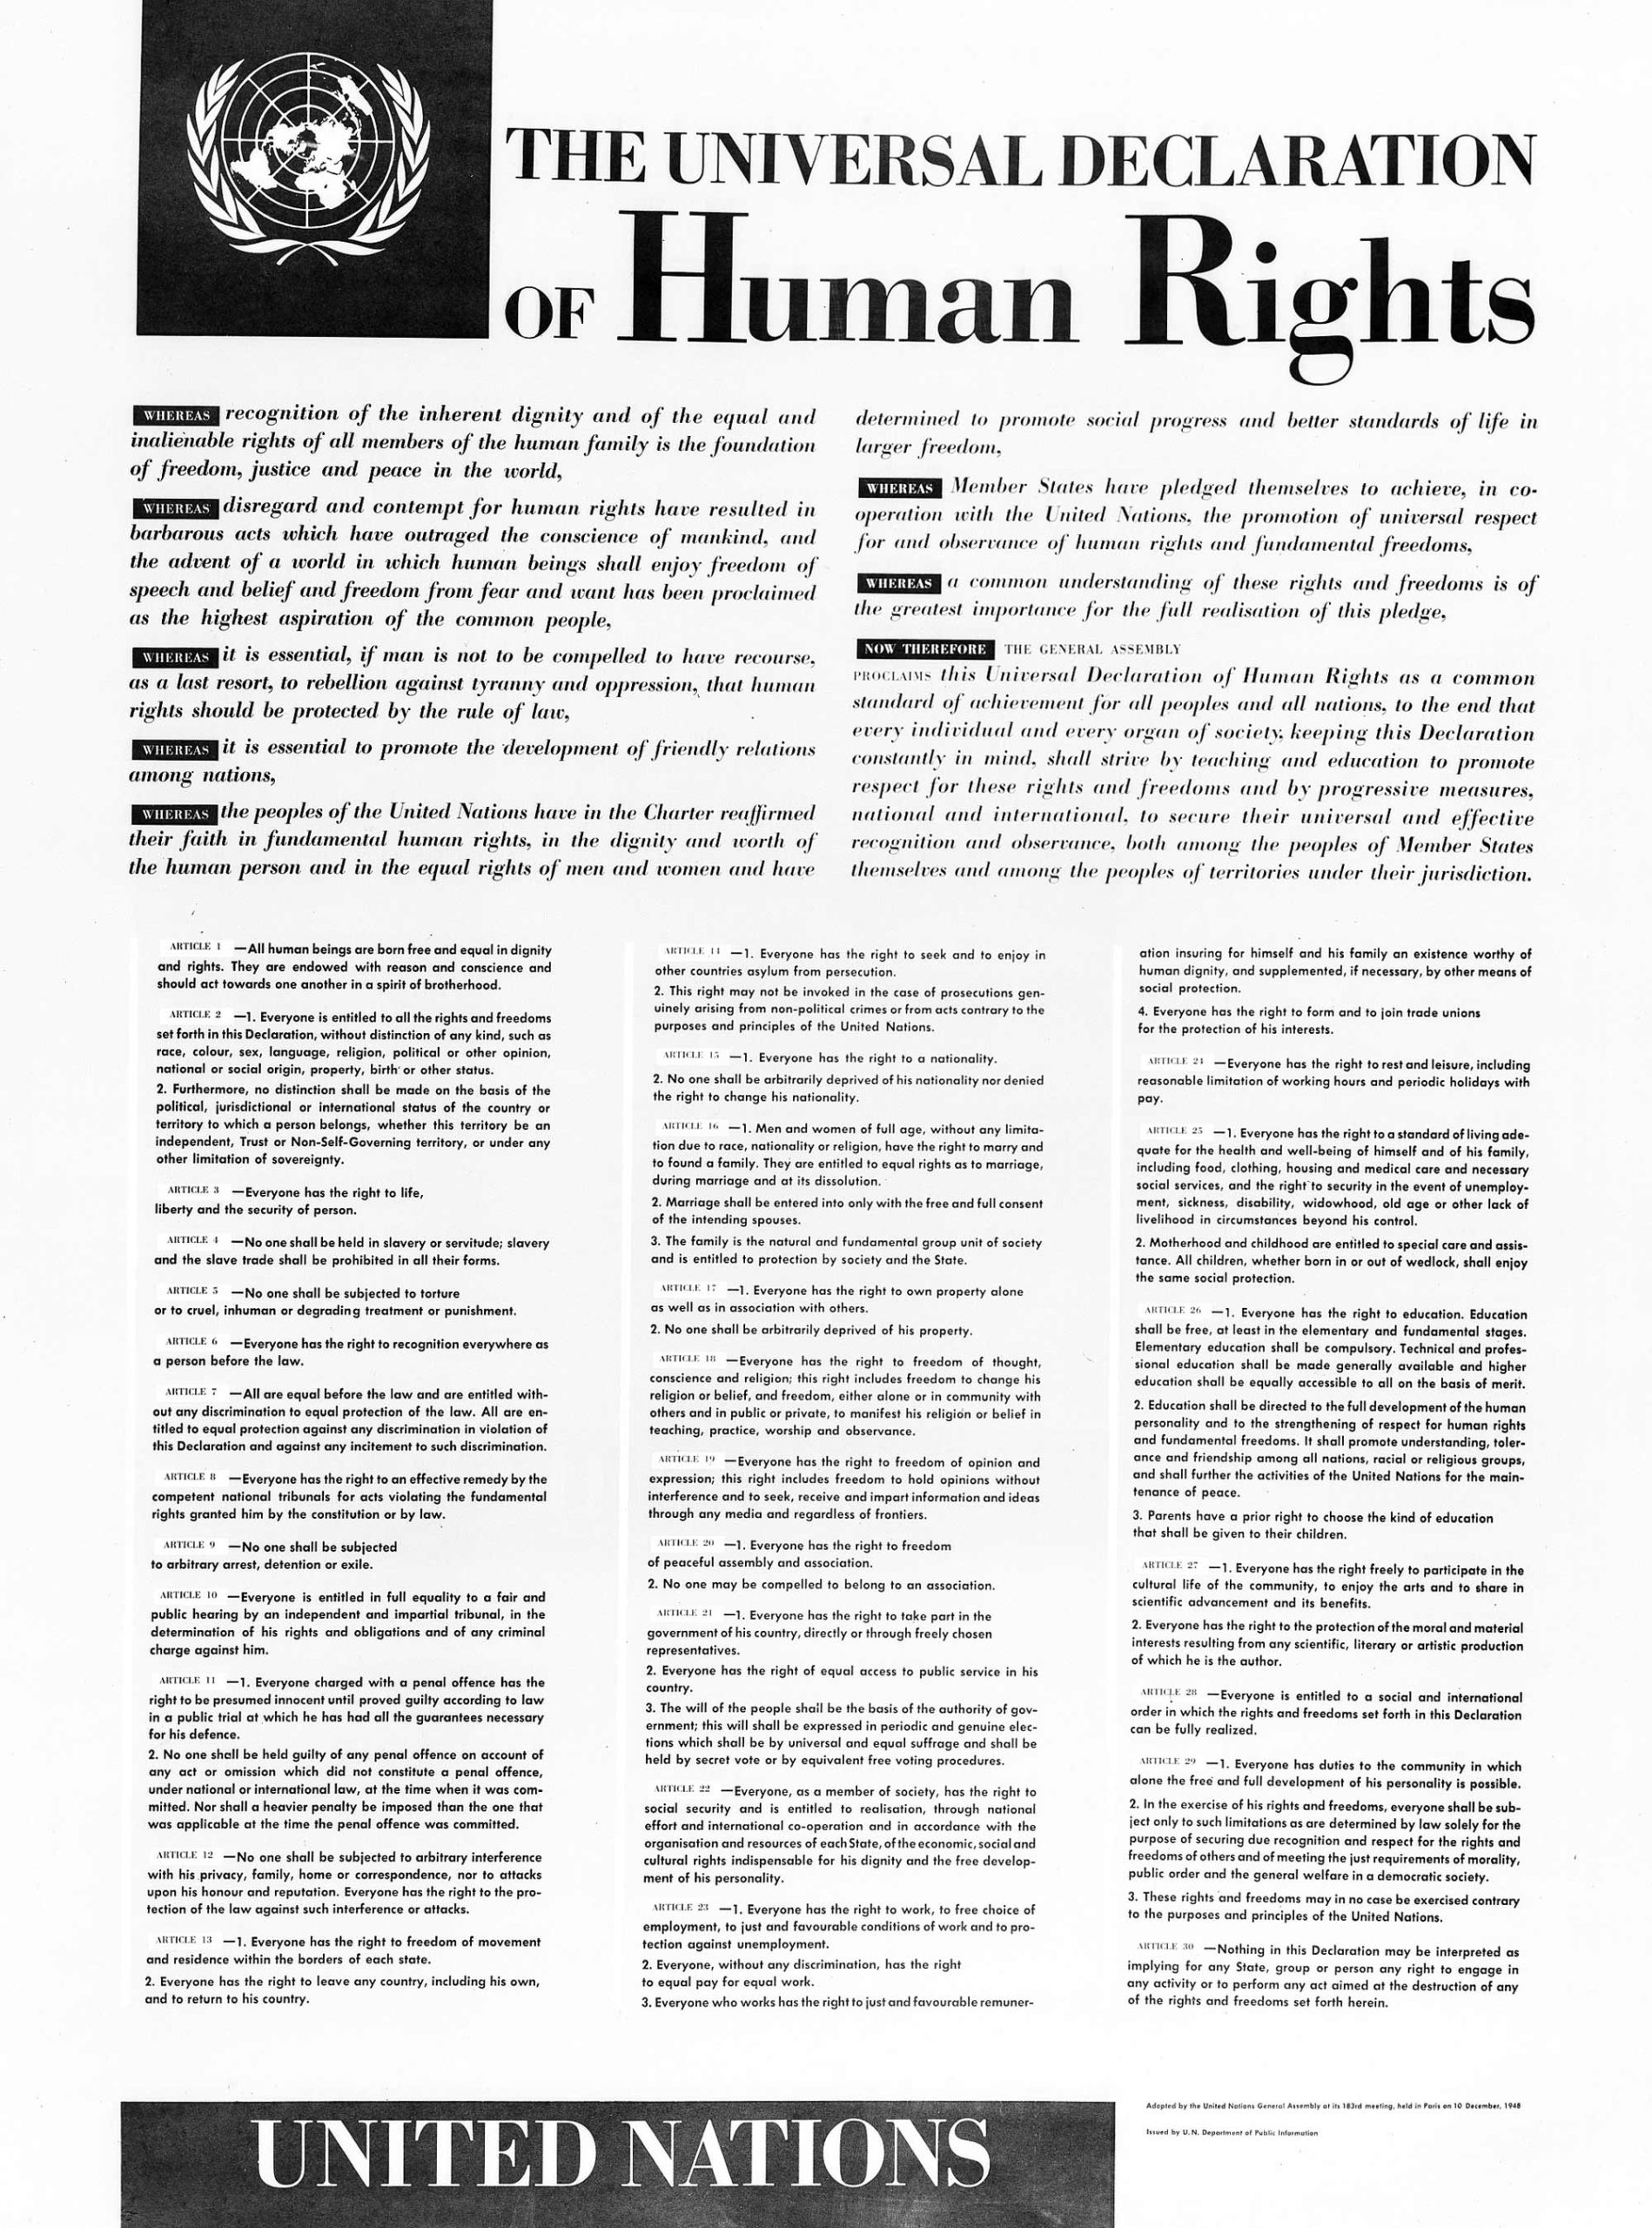 10 de diciembre de 1948 Las Naciones Unidas aprobaba la Declaración Universal de los Derechos Humanos